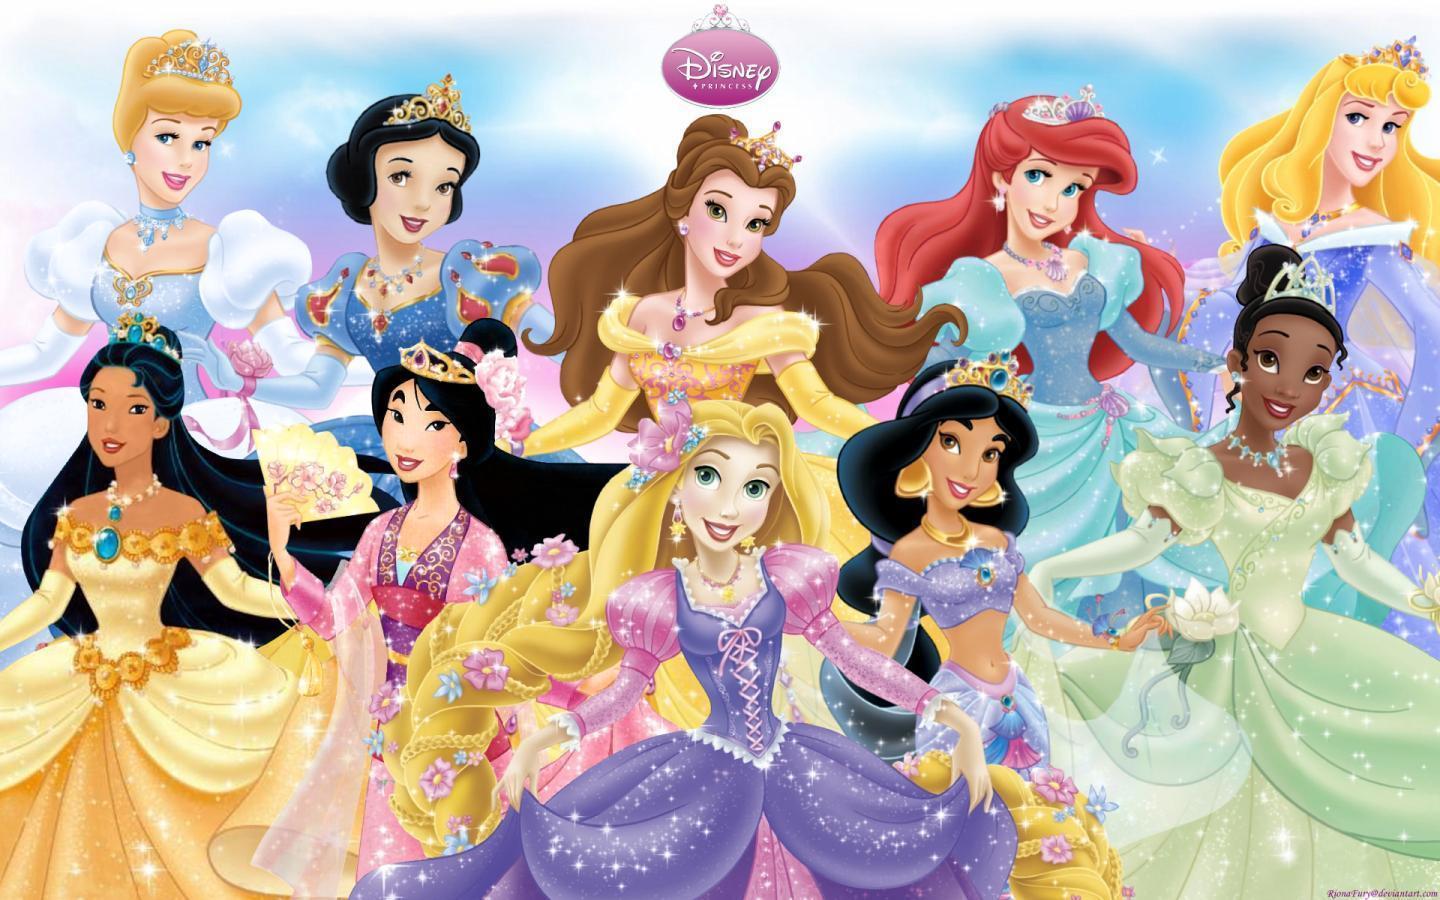 Fondos de Princesas Disney - Cueva Wallpaper